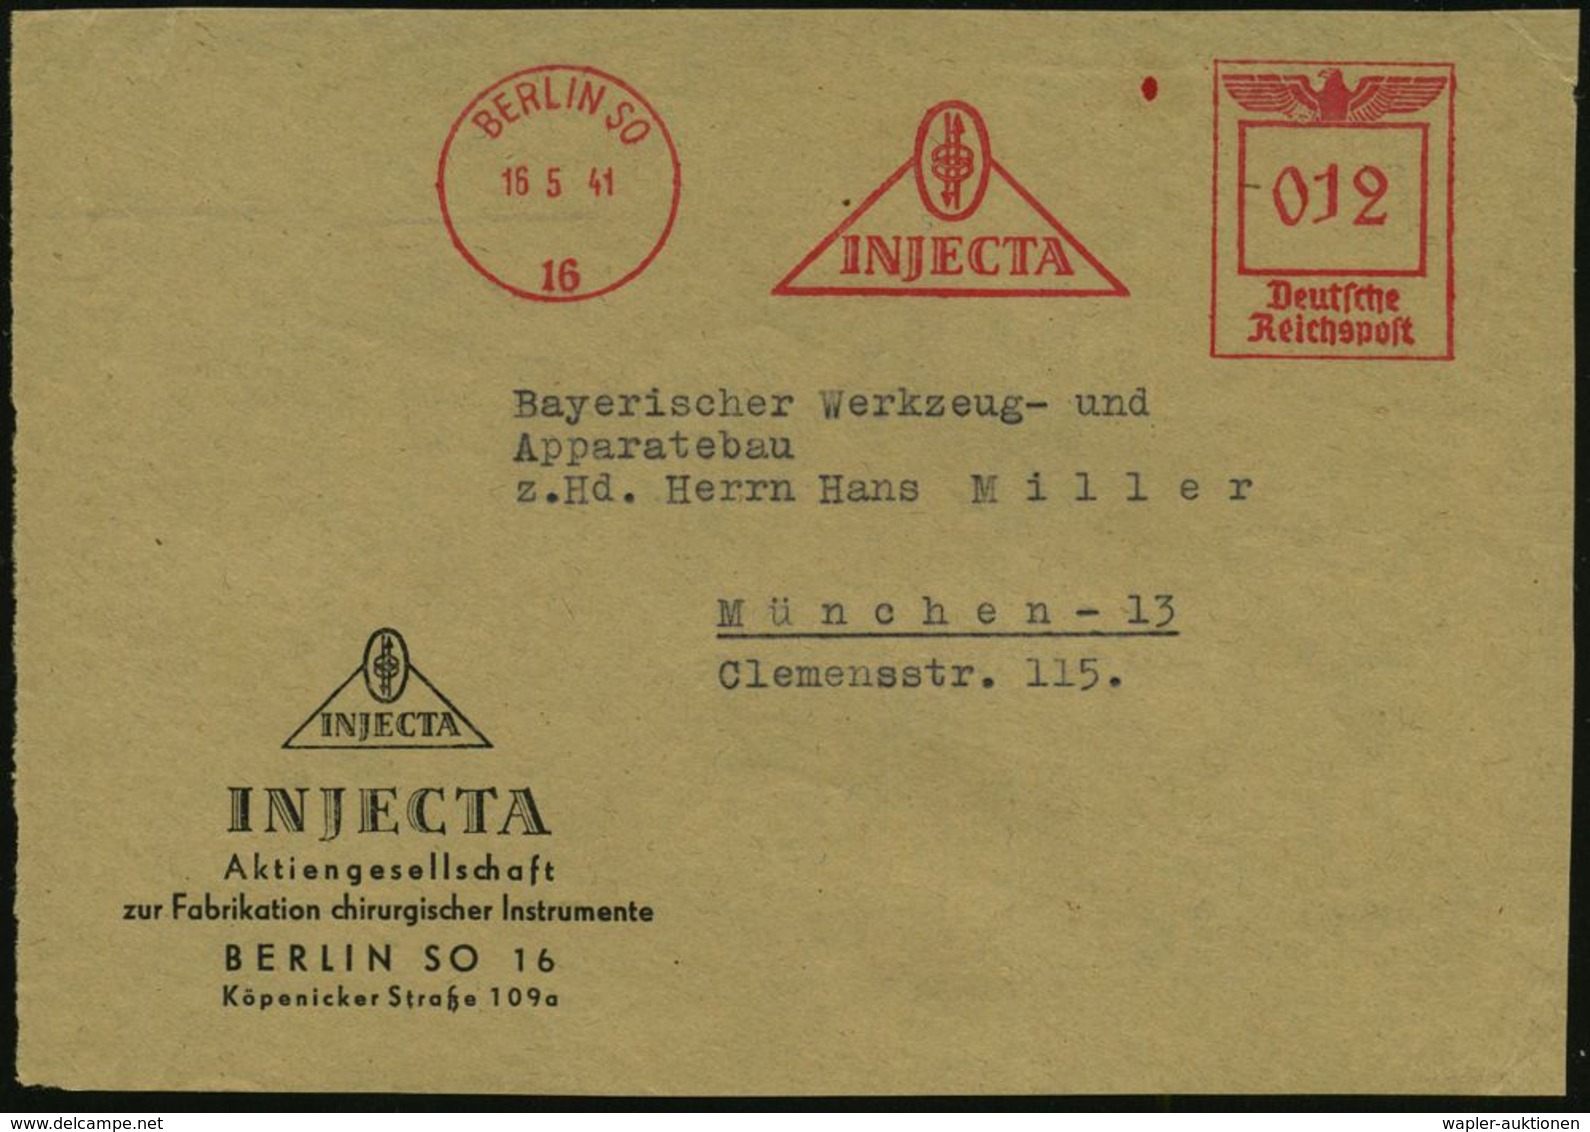 MEDIZINISCHE AUSRÜSTUNG & INSTRUMENTE : BERLIN SO/ 16/ INJECTA 1941 (16.5.) AFS (Logo) Motivgl. Firmen-Vs.: INJECTA, Fab - Medicine